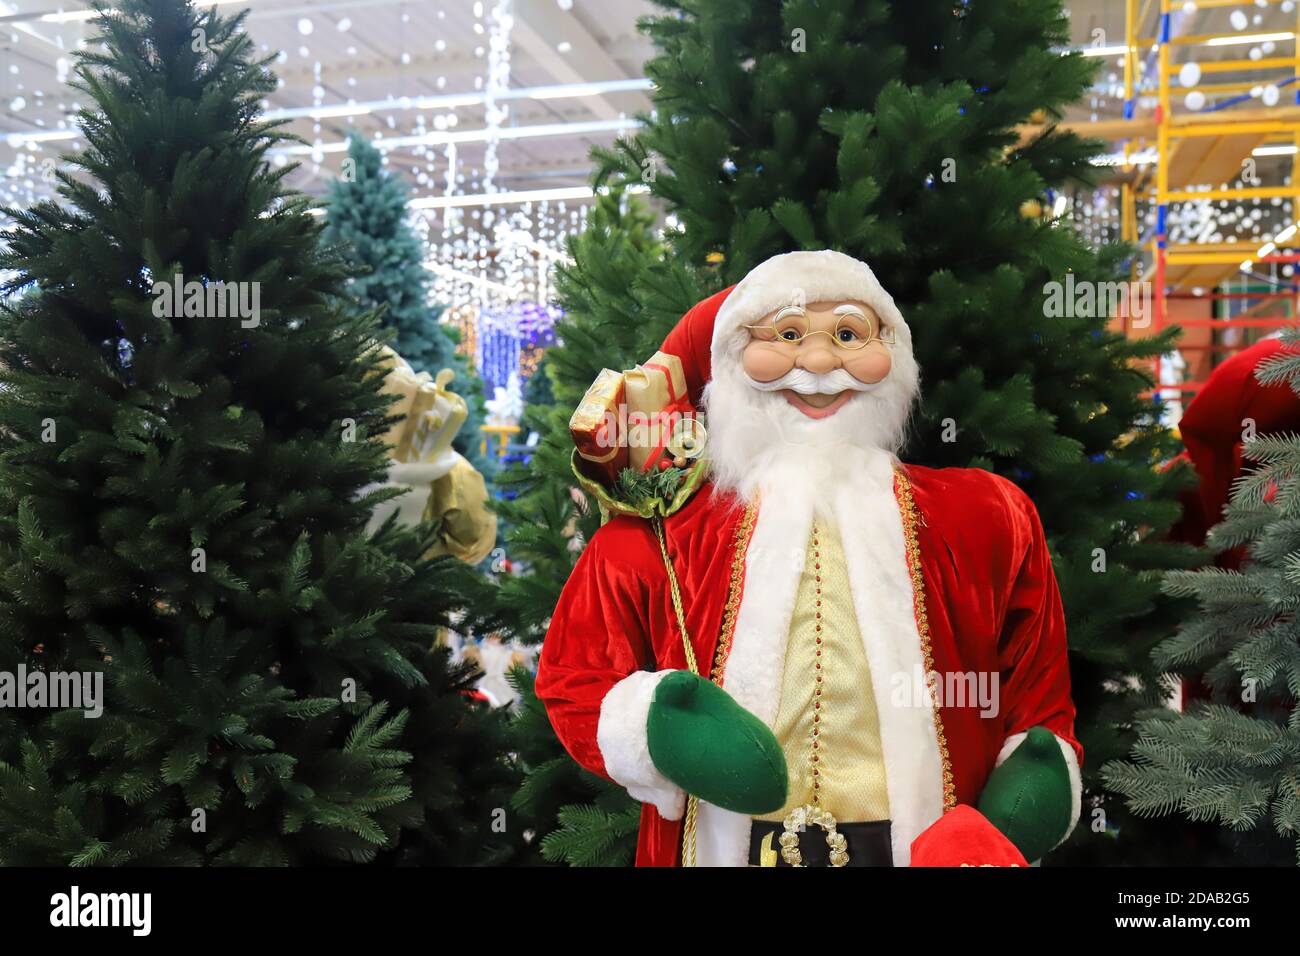 Divertente Babbo Natale sorridente in un cappello rosso, bello Capodanno e Natale giocattolo, decorazioni. Natale Natale inverno shopping, vendita. Negozio di giocattoli Foto Stock